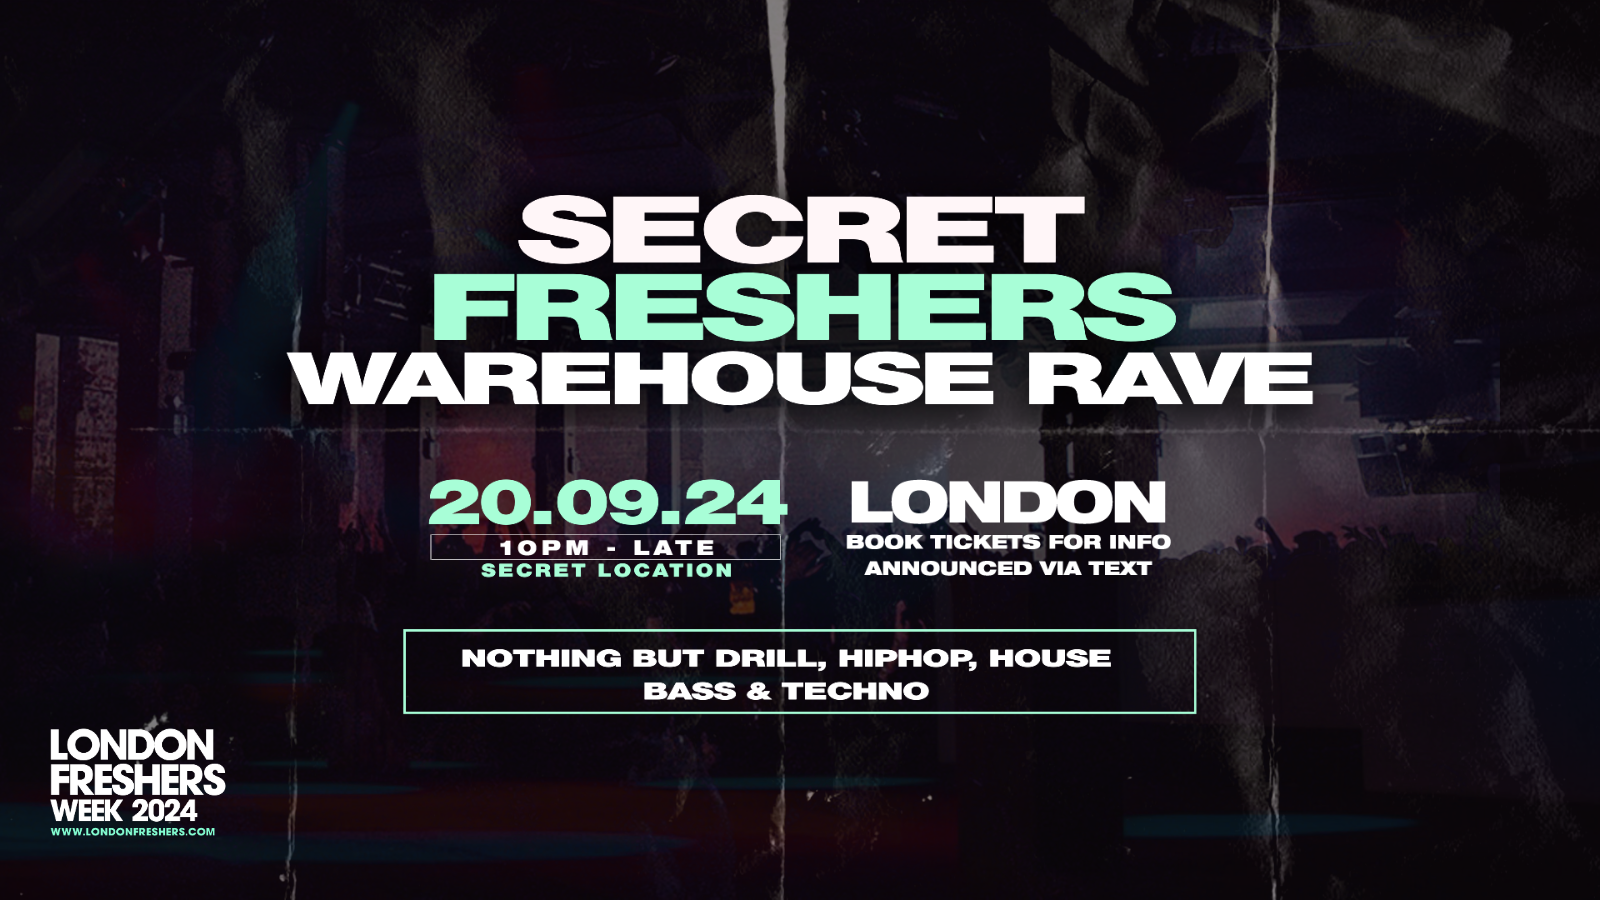 The Secret Freshers Warehouse Rave – London Freshers Week 2024